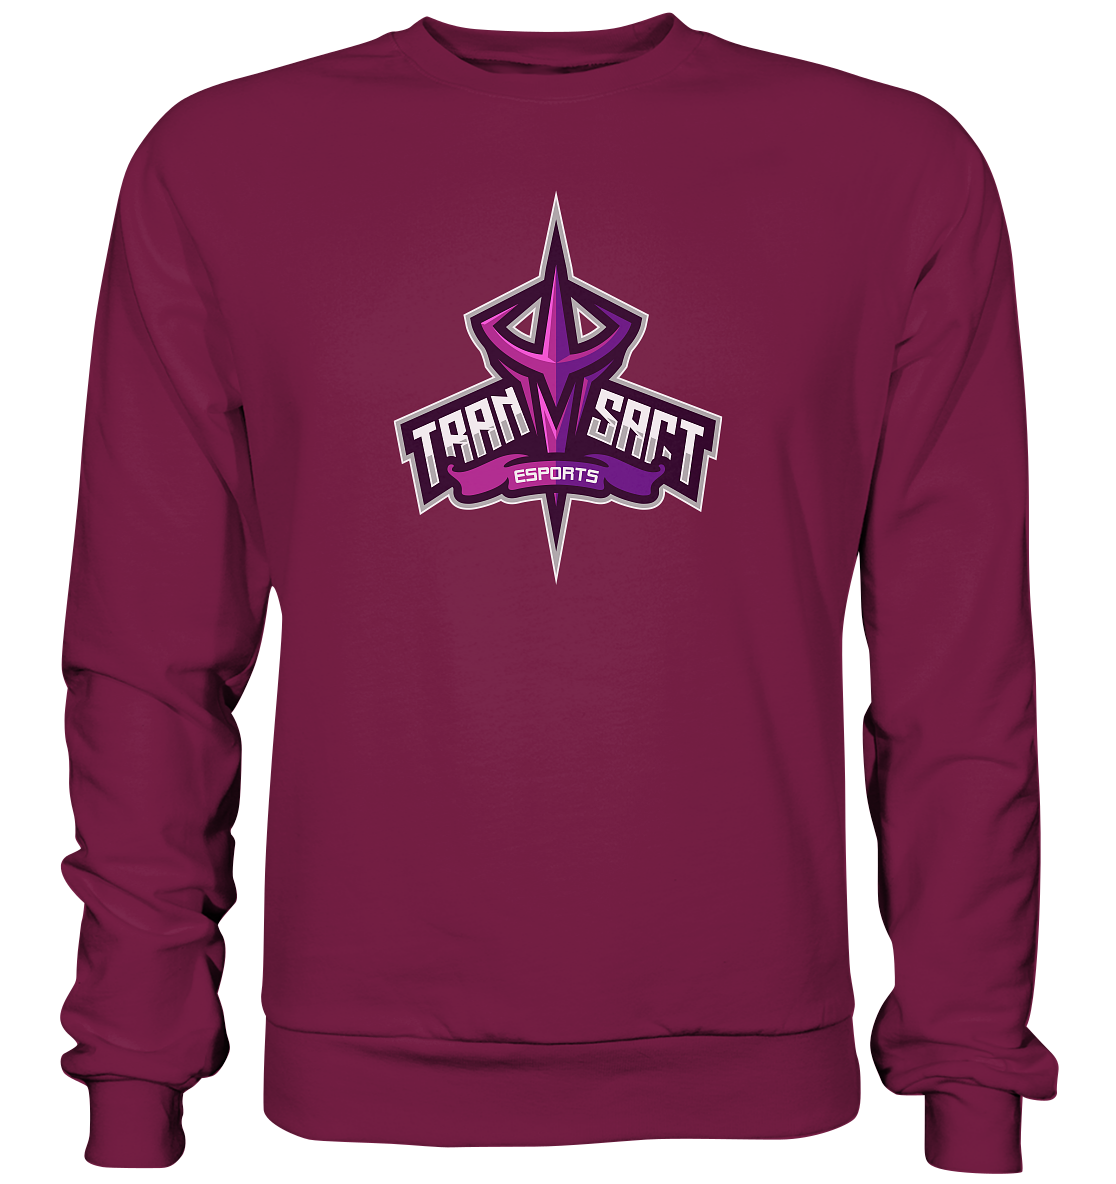 TRANSACT ESPORTS - Basic Sweatshirt